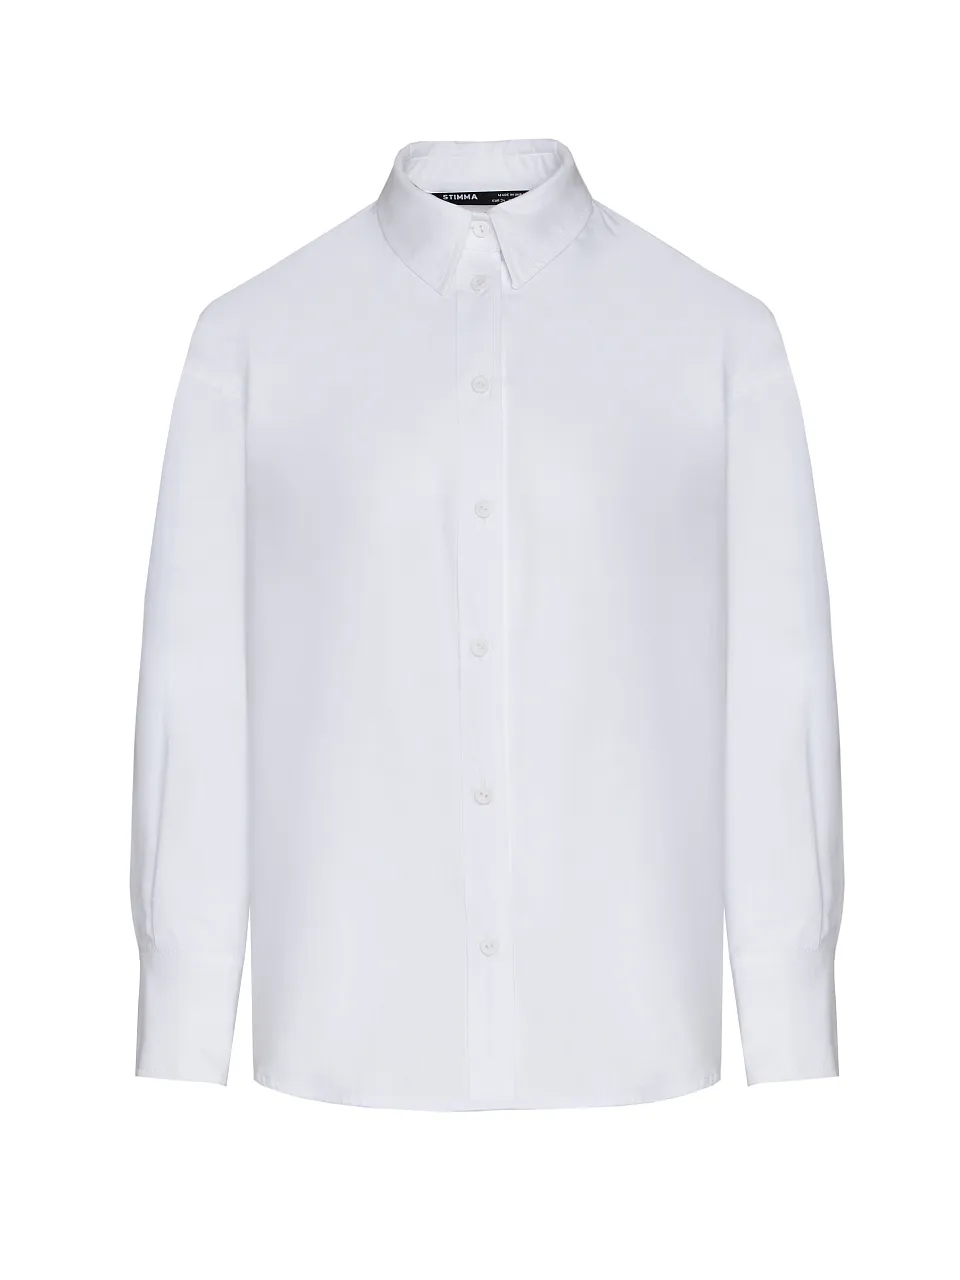 Жіноча сорочка Stimma Арлен, колір - Білий